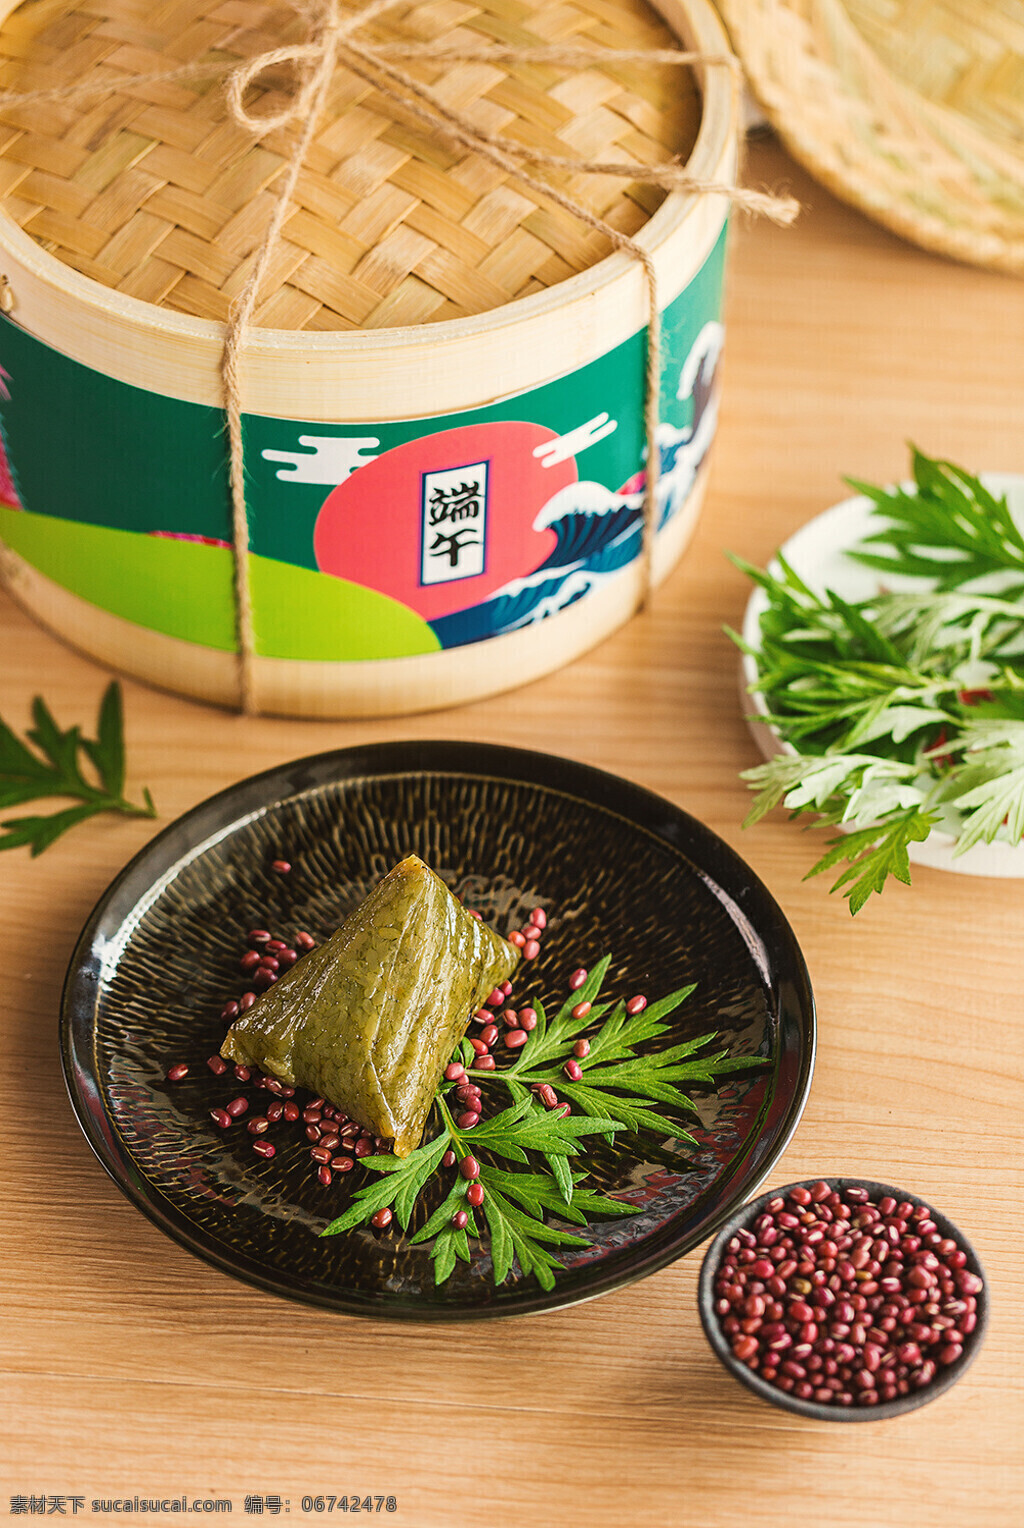 红豆抹茶粽子 中国 传统 端午 食品 红豆 抹茶 粽子 餐饮美食 传统美食